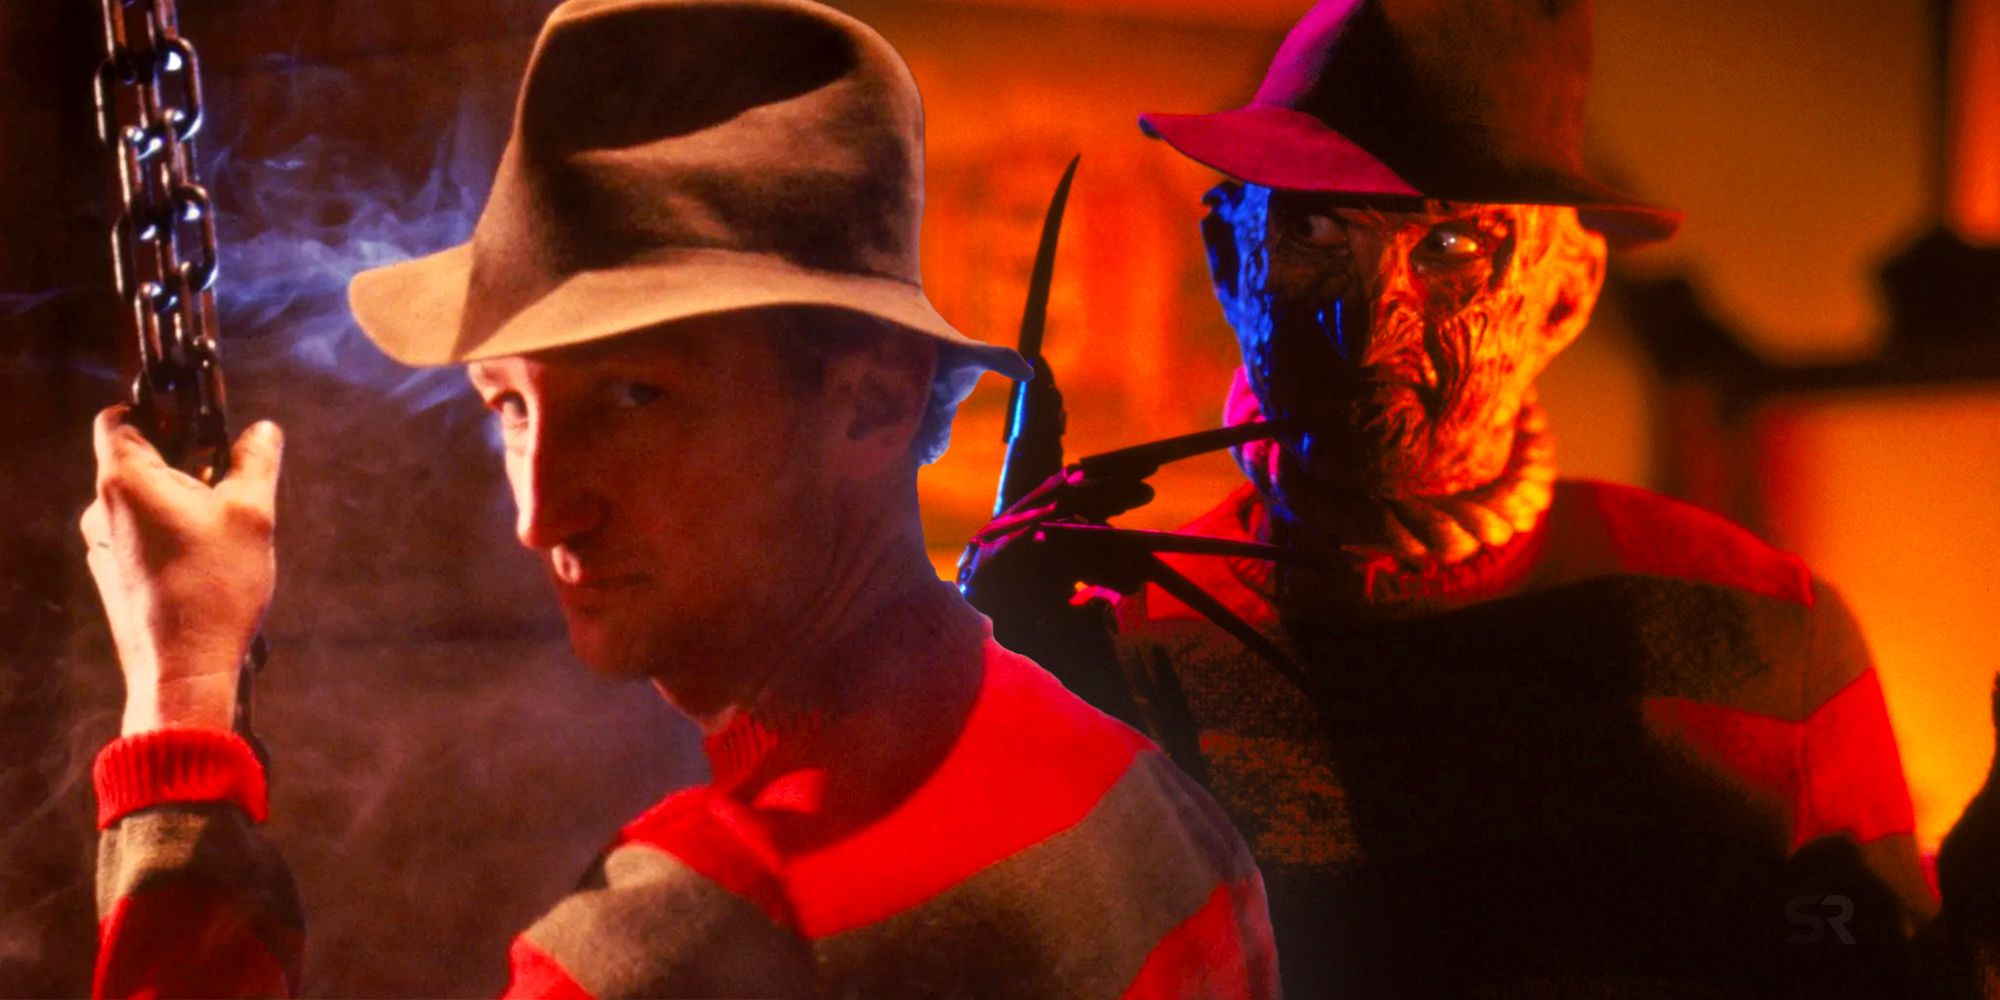 Por qué fracasó el programa de televisión de Pesadilla en Elm Street, según Robert Englund